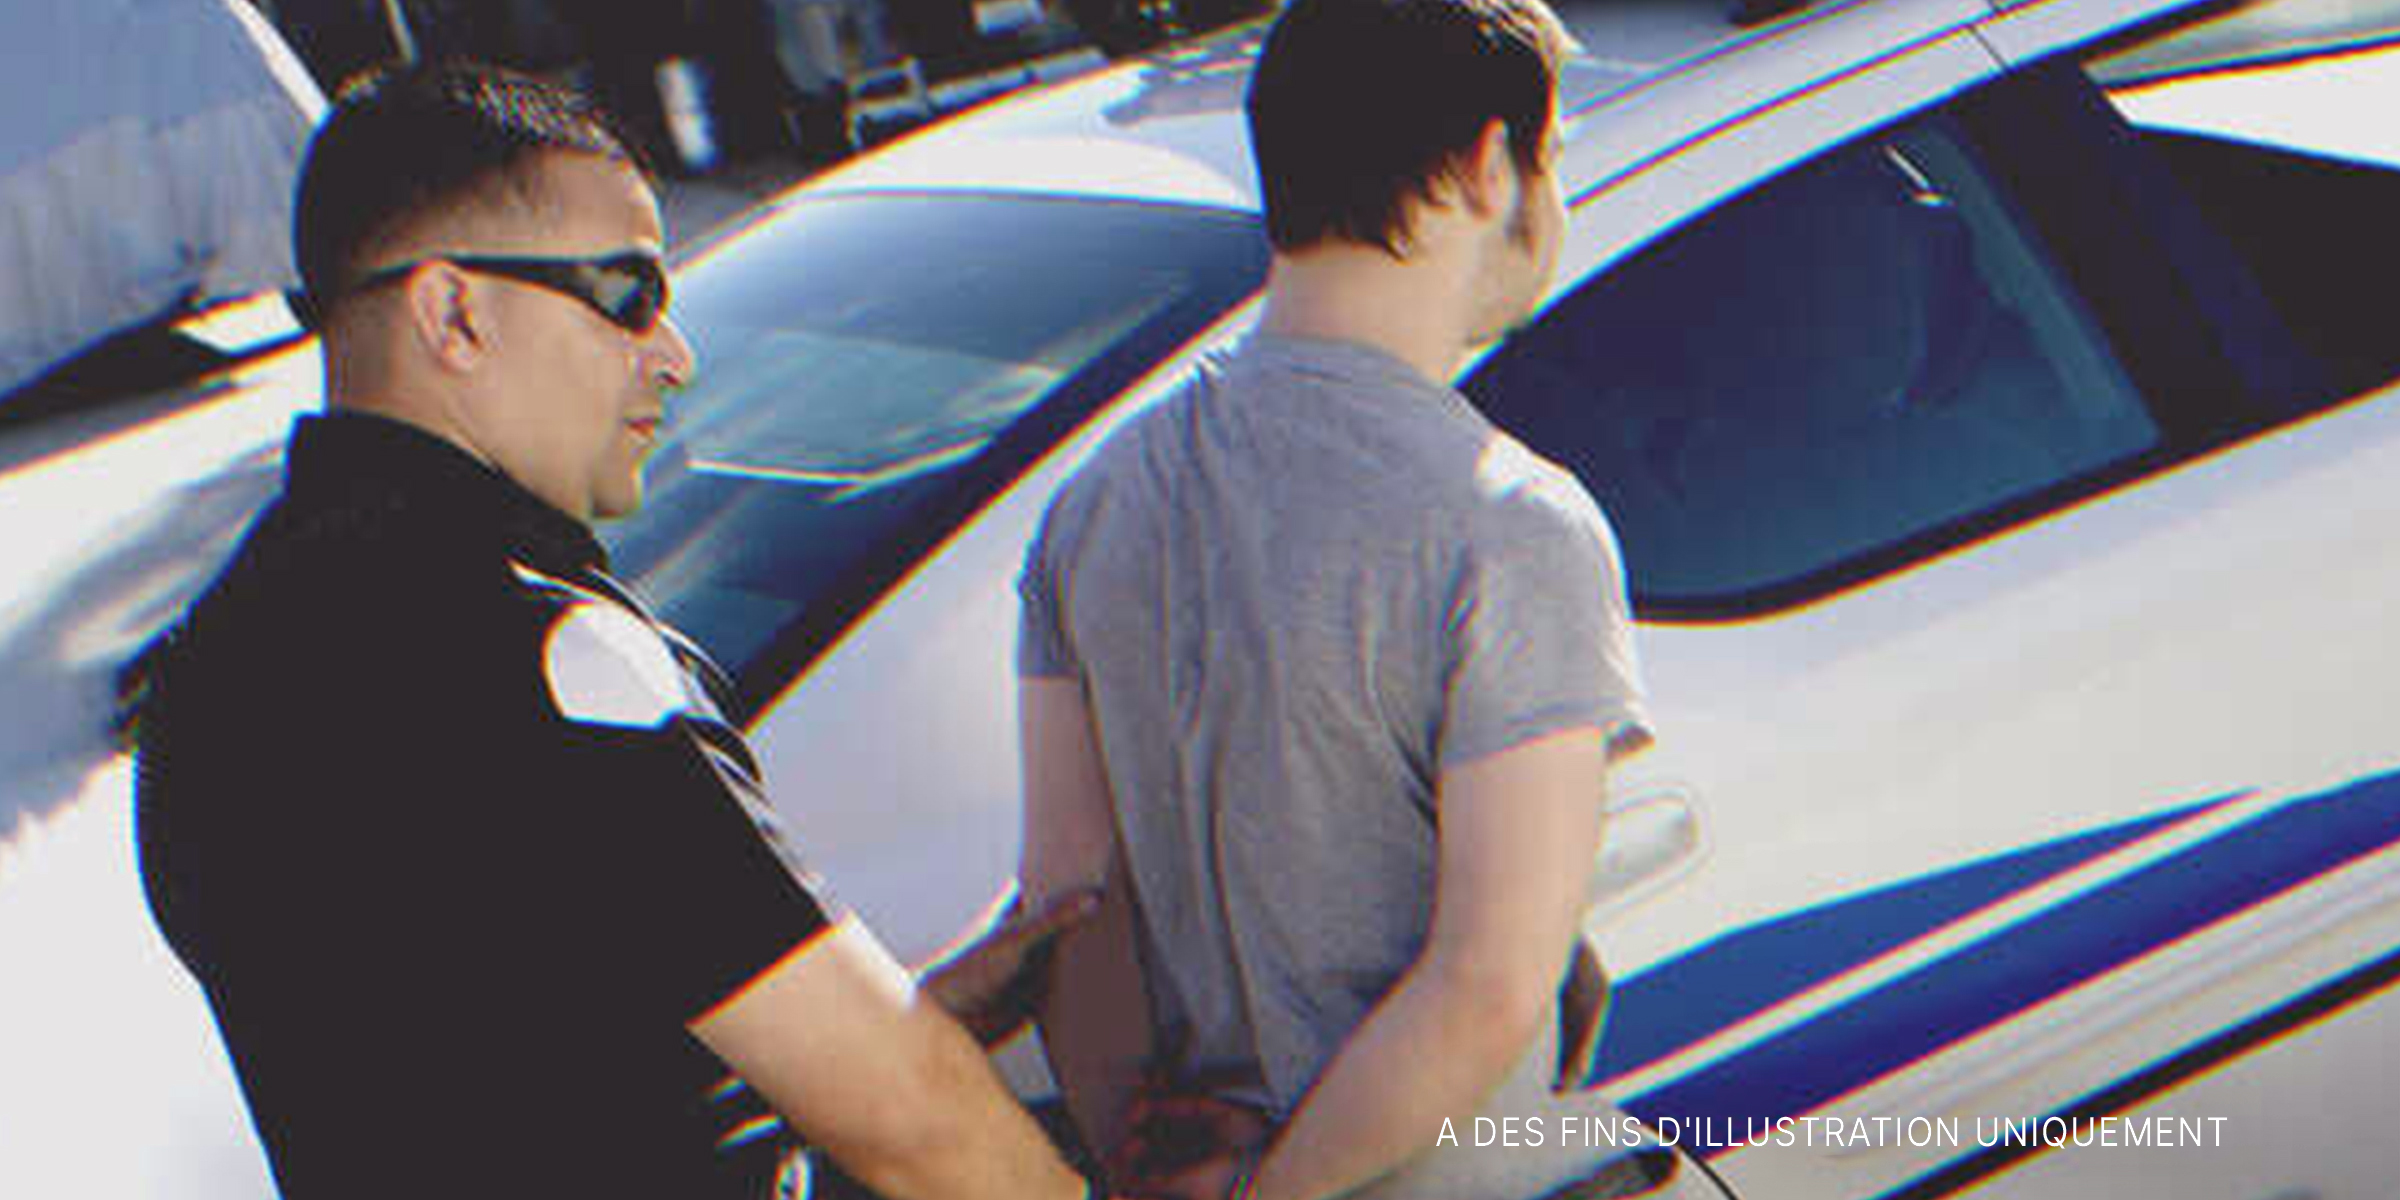 Homme arrêté par la police | Source : Shutterstock.com